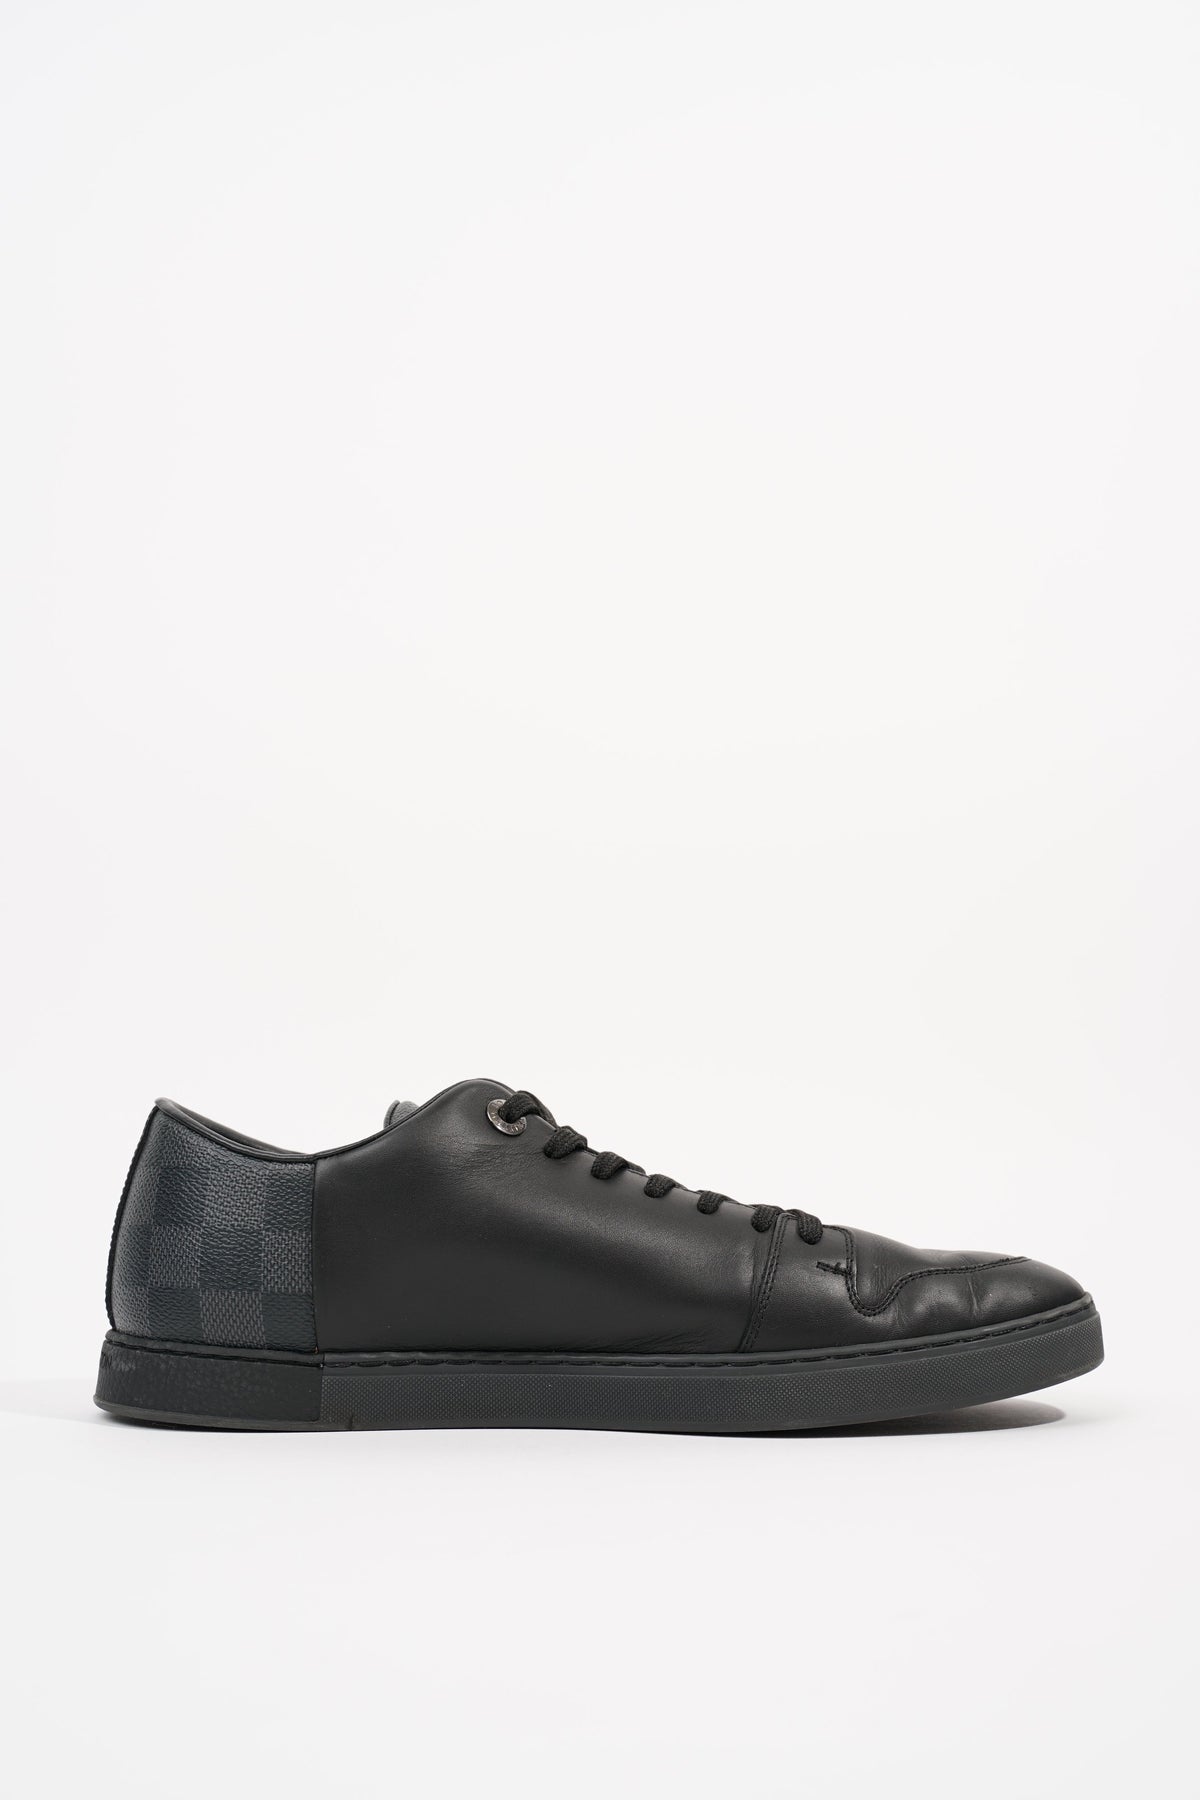 Louis Vuitton, Shoes, Louis Vuitton Damier Low Top Mens Sneaker